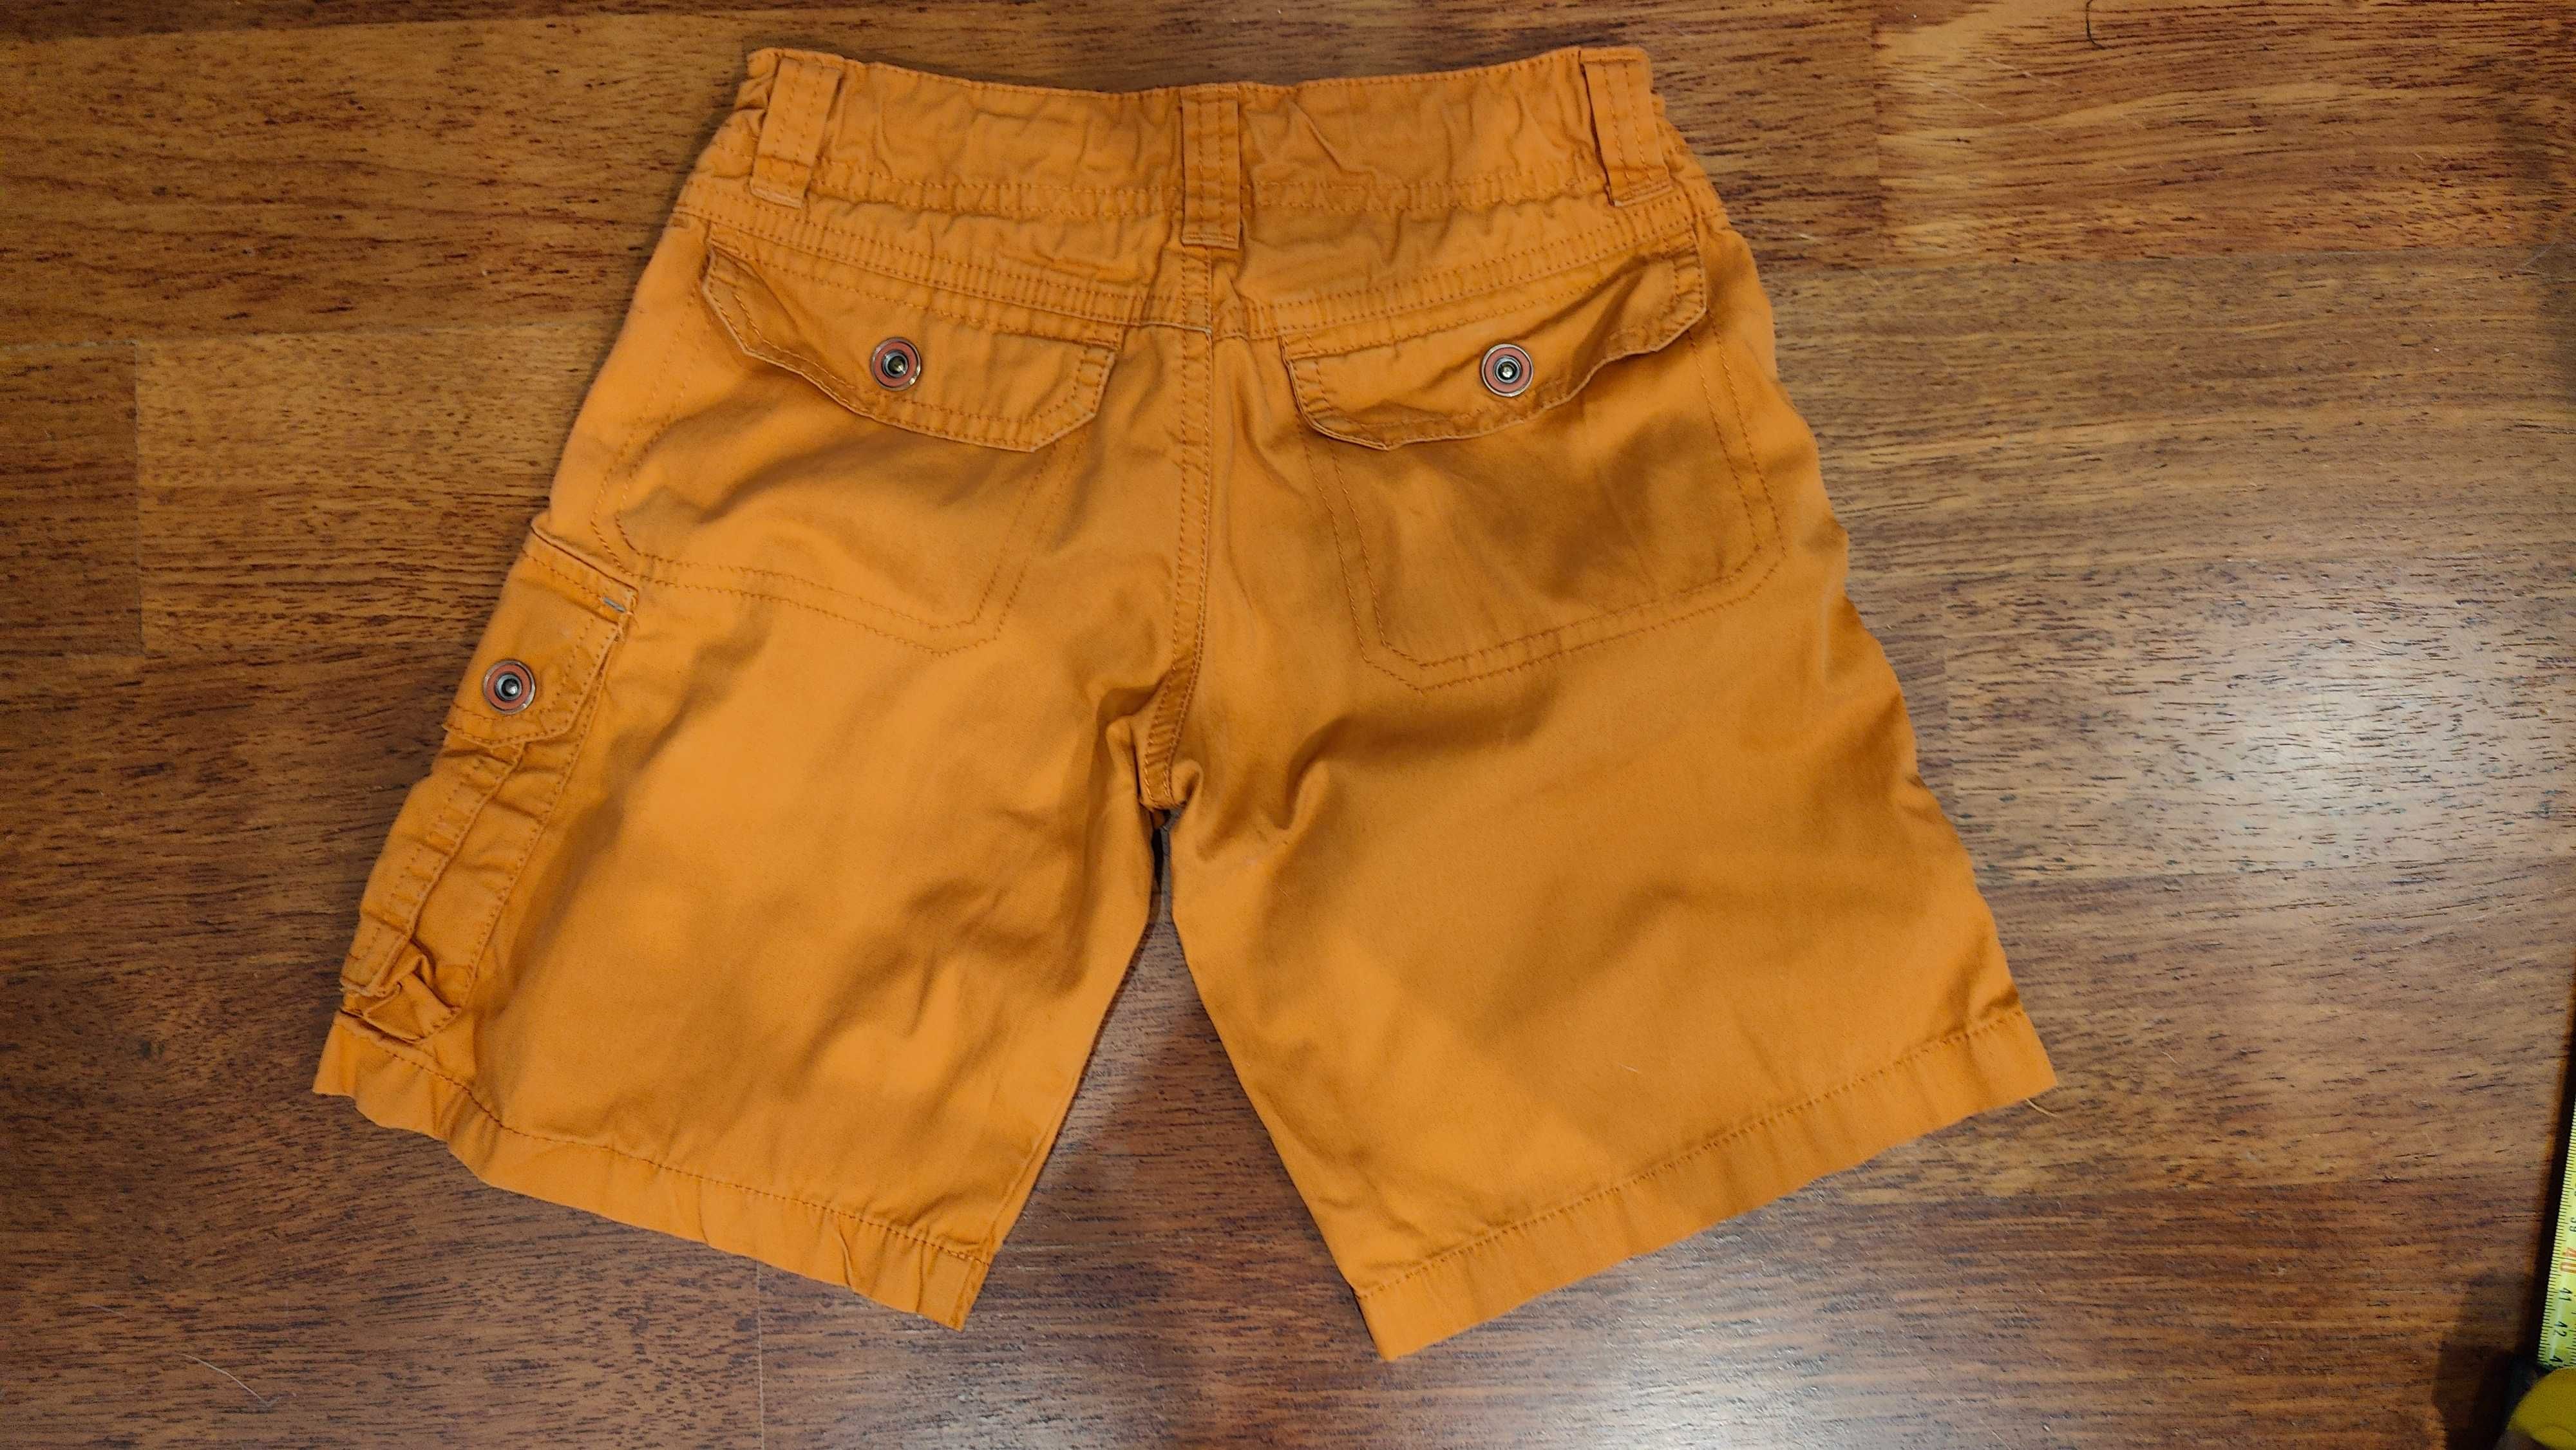 Pomarańczowe spodnie krótkie. Decathlon.